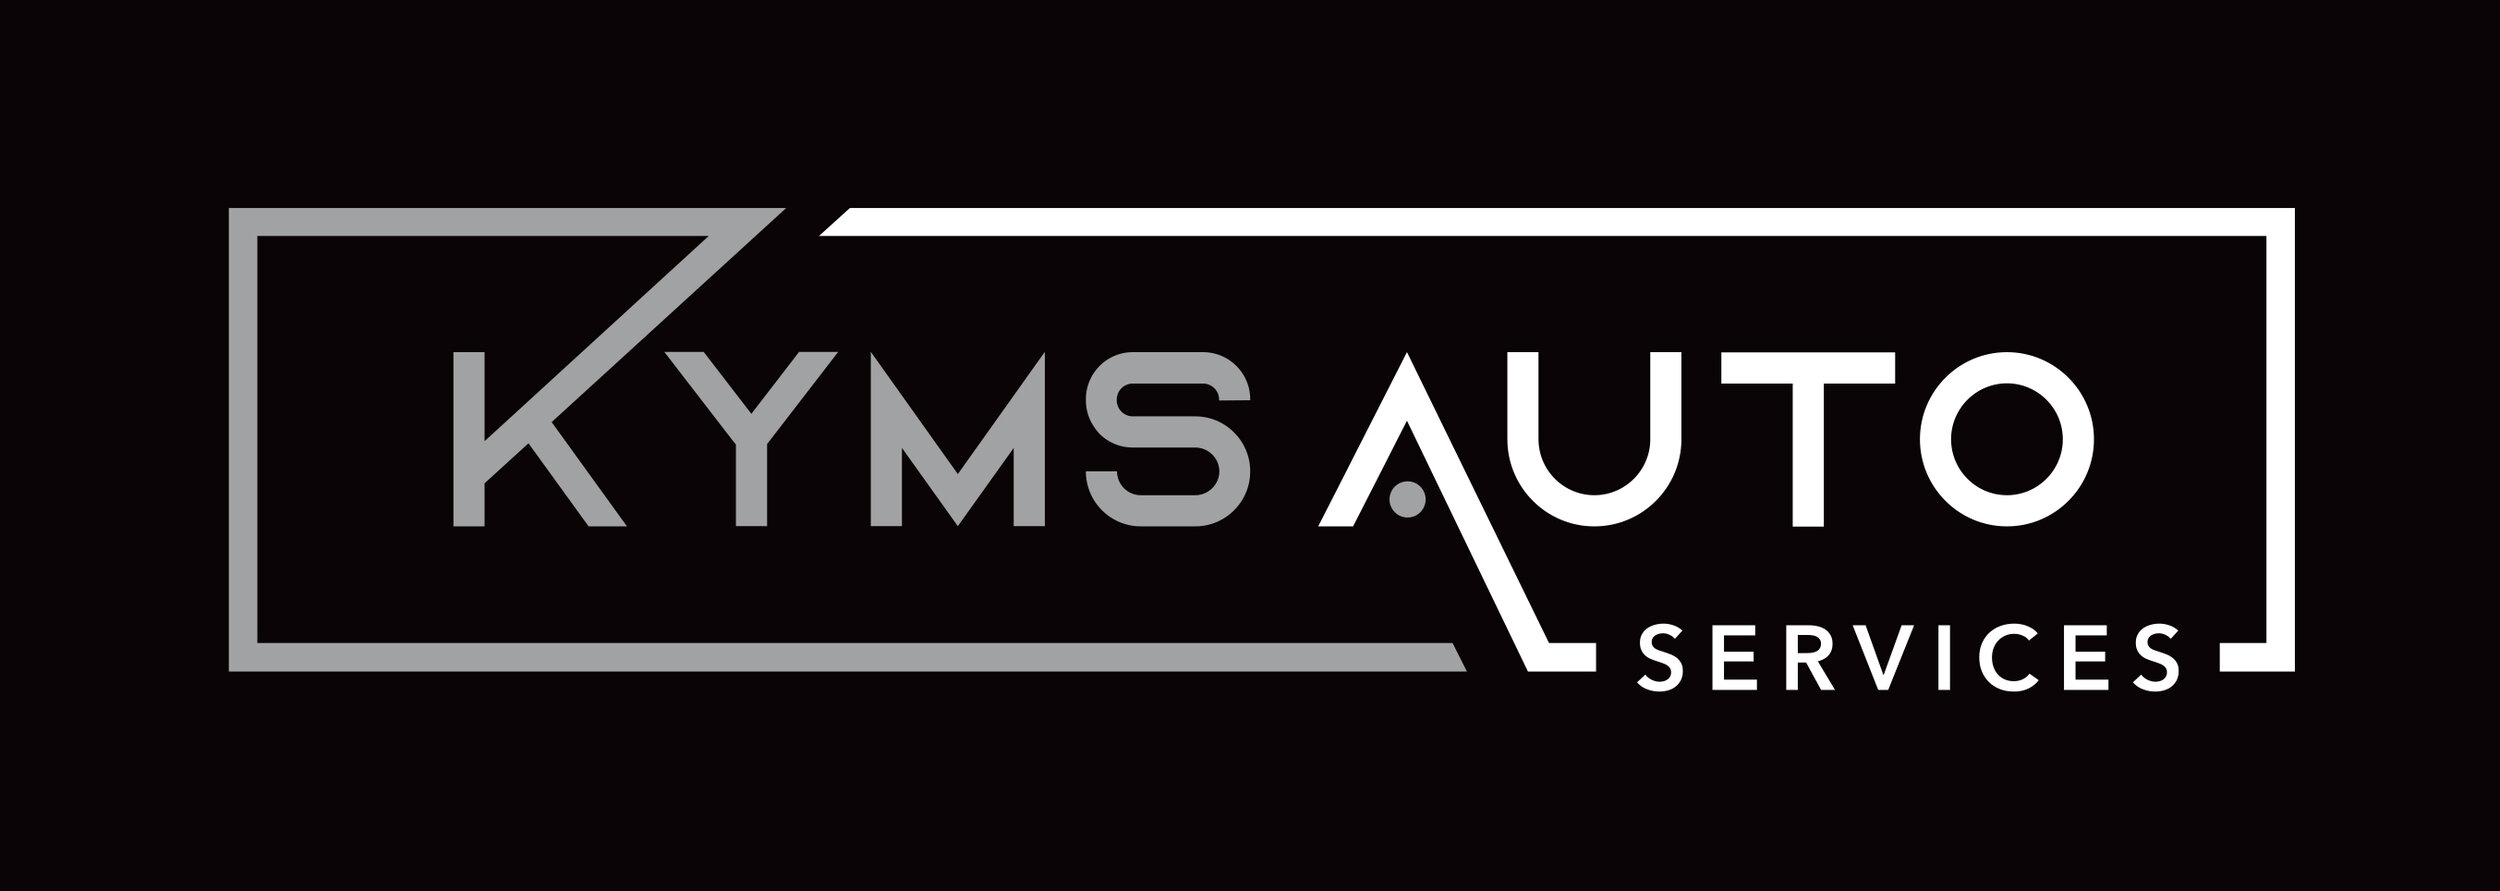 Kyms Auto Logo__BlackBG_300DPI.jpg